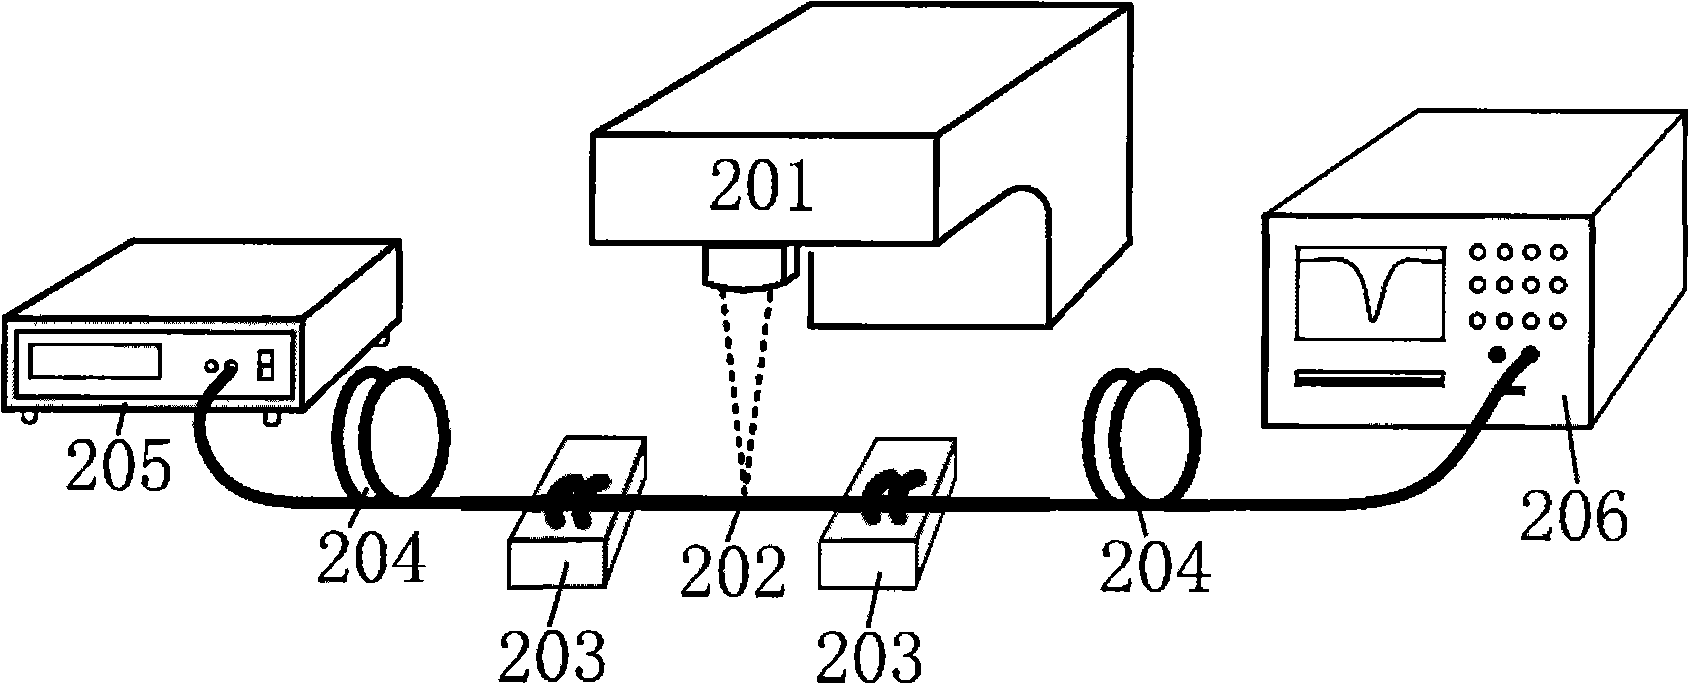 Method for manufacturing fiber grating and sensor using same